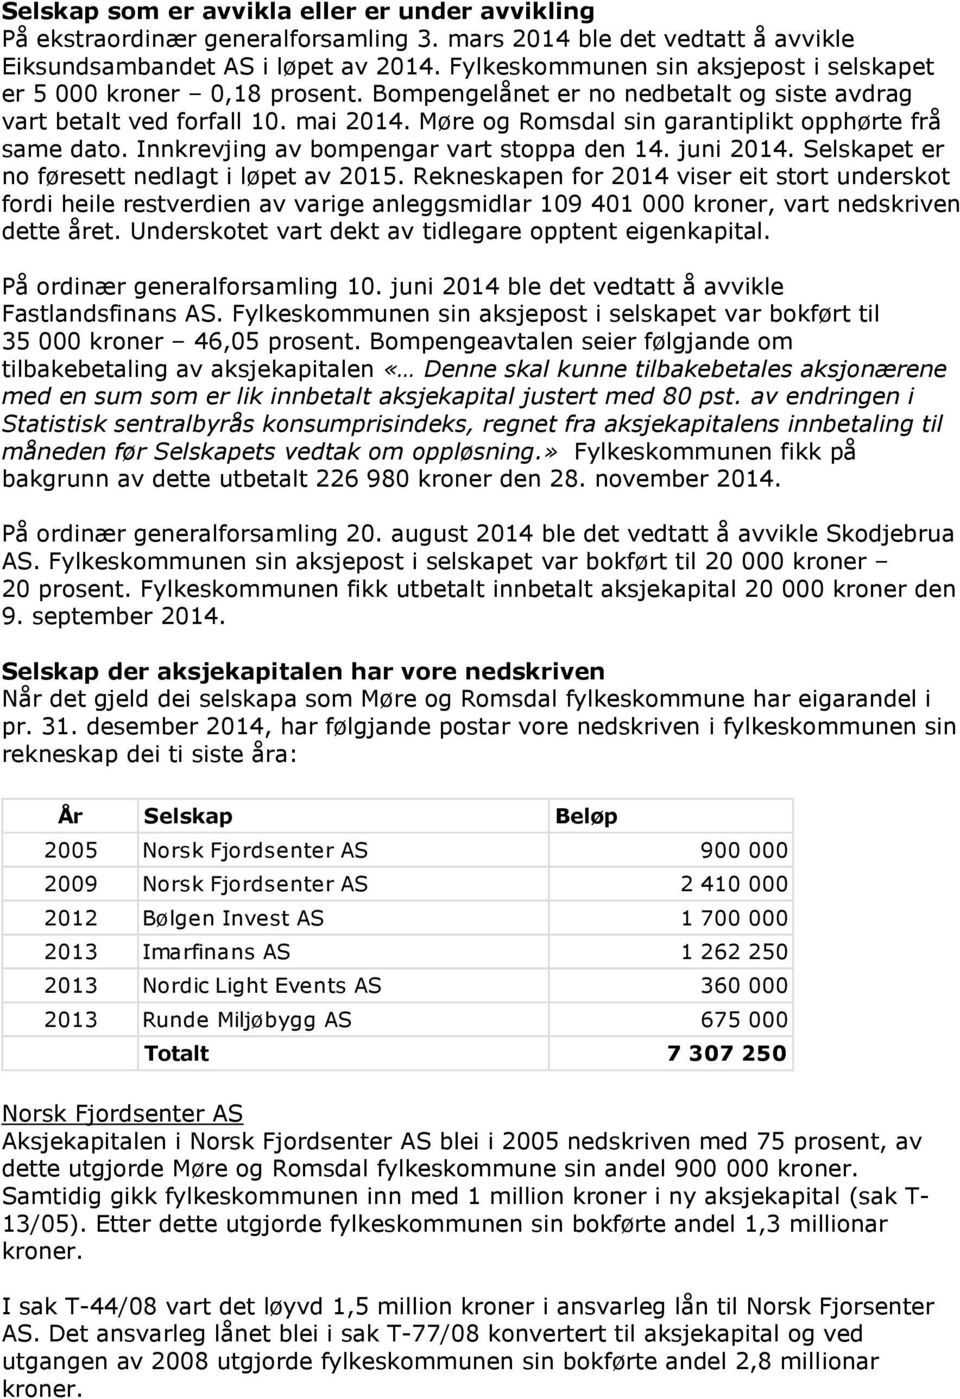 Møre og Romsdal sin garantiplikt opphørte frå same dato. Innkrevjing av bompengar vart stoppa den 14. juni 2014. Selskapet er no føresett nedlagt i løpet av 2015.